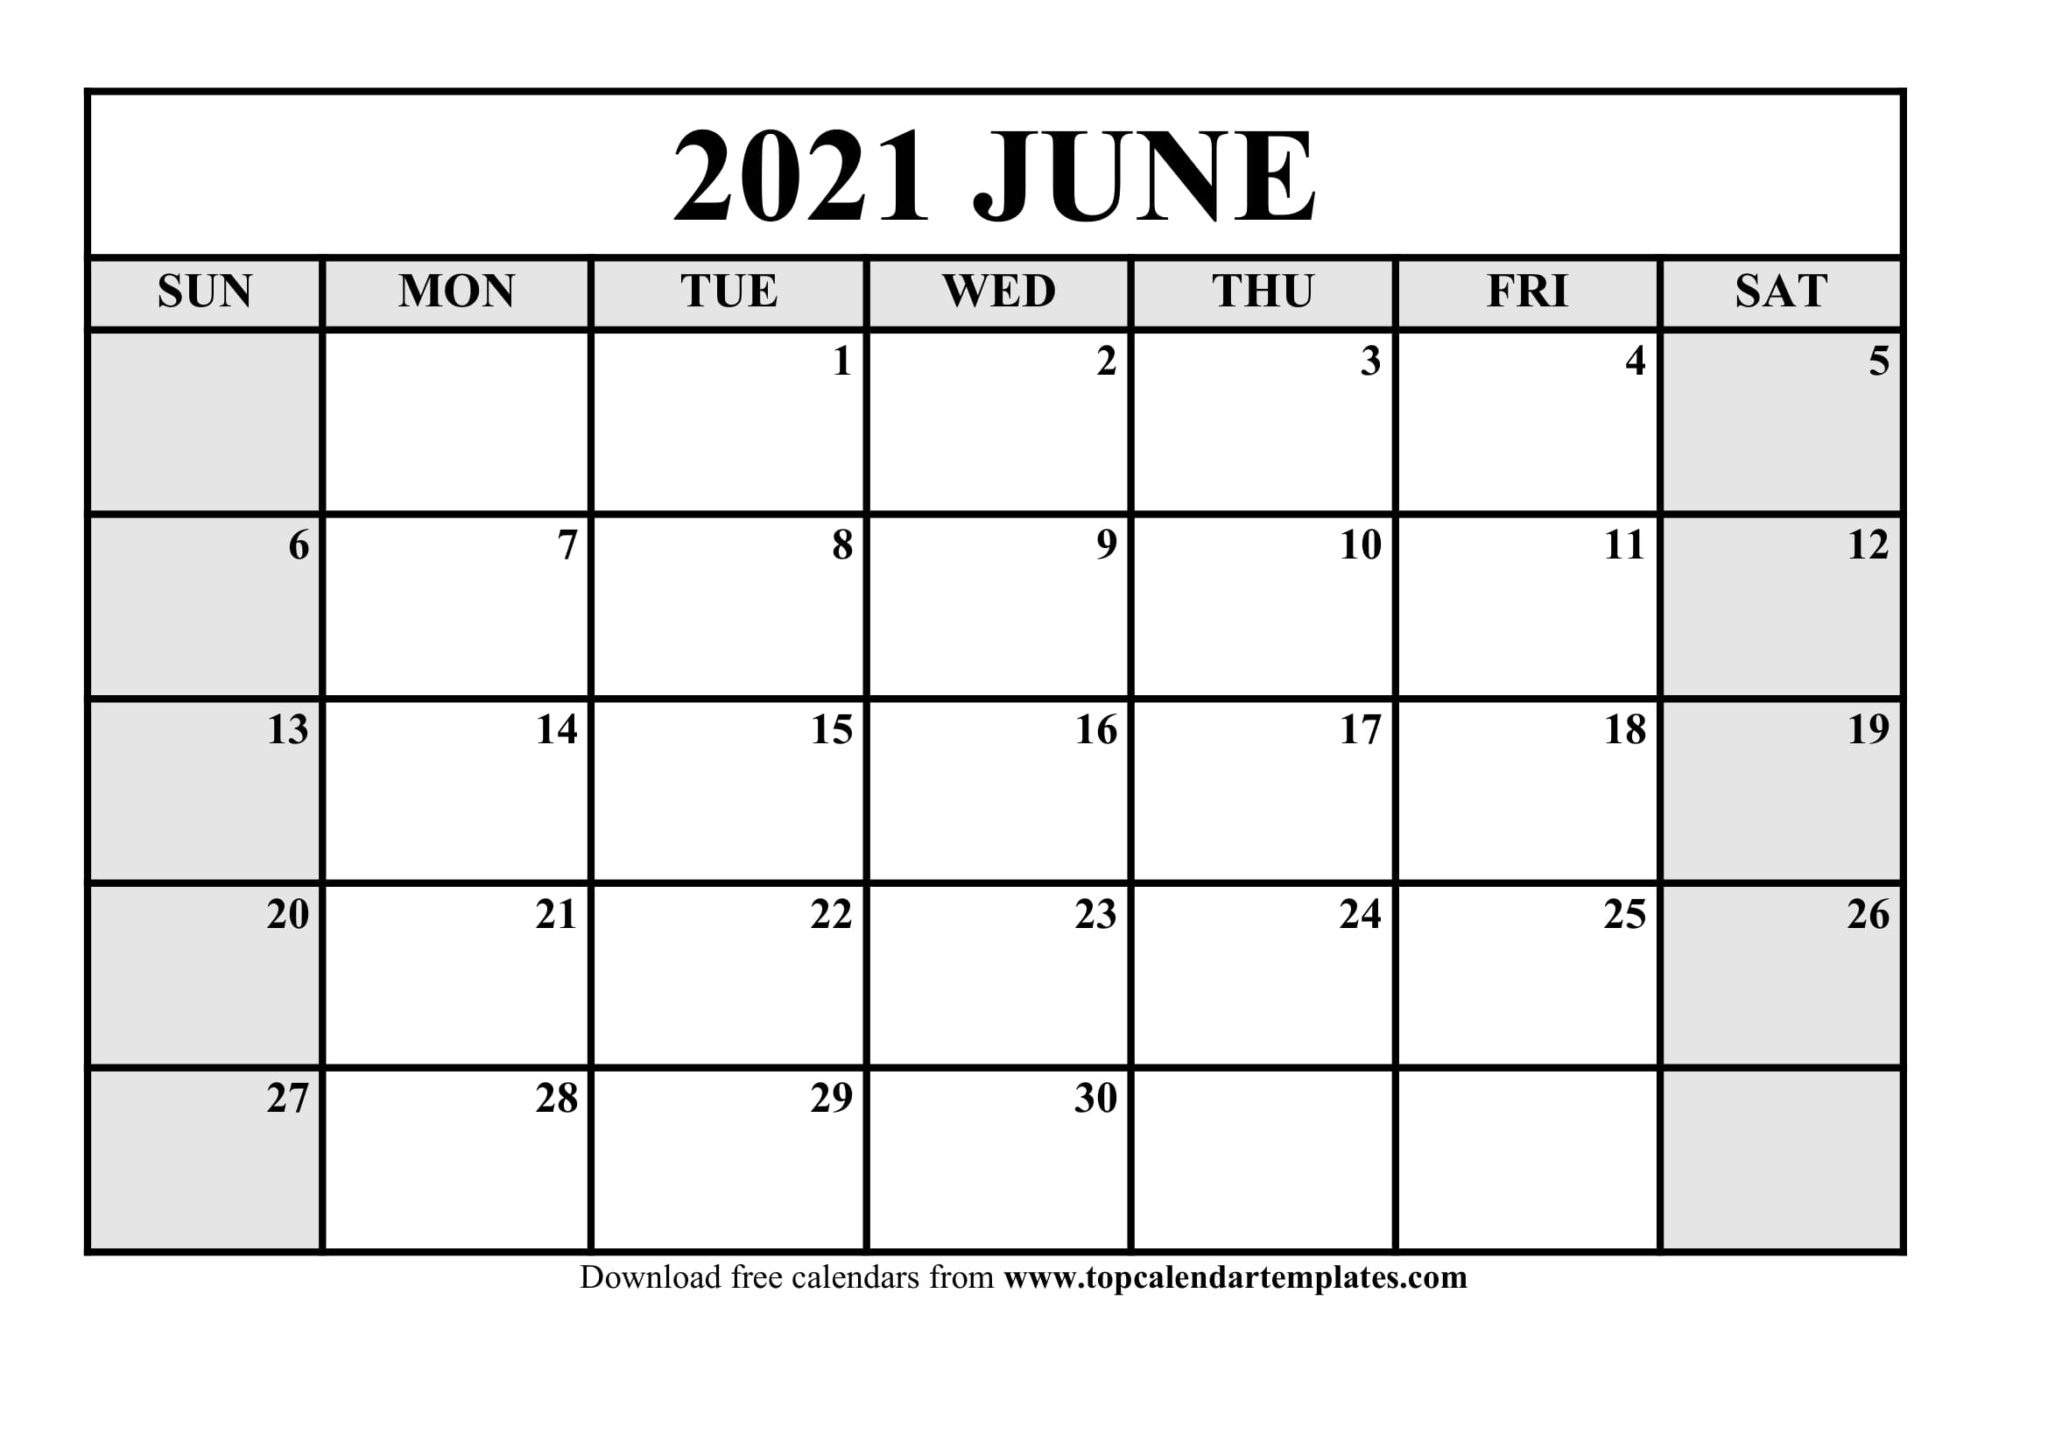 Free June 2021 Printable Calendar In Editable Format June 2021 Calendar Editable